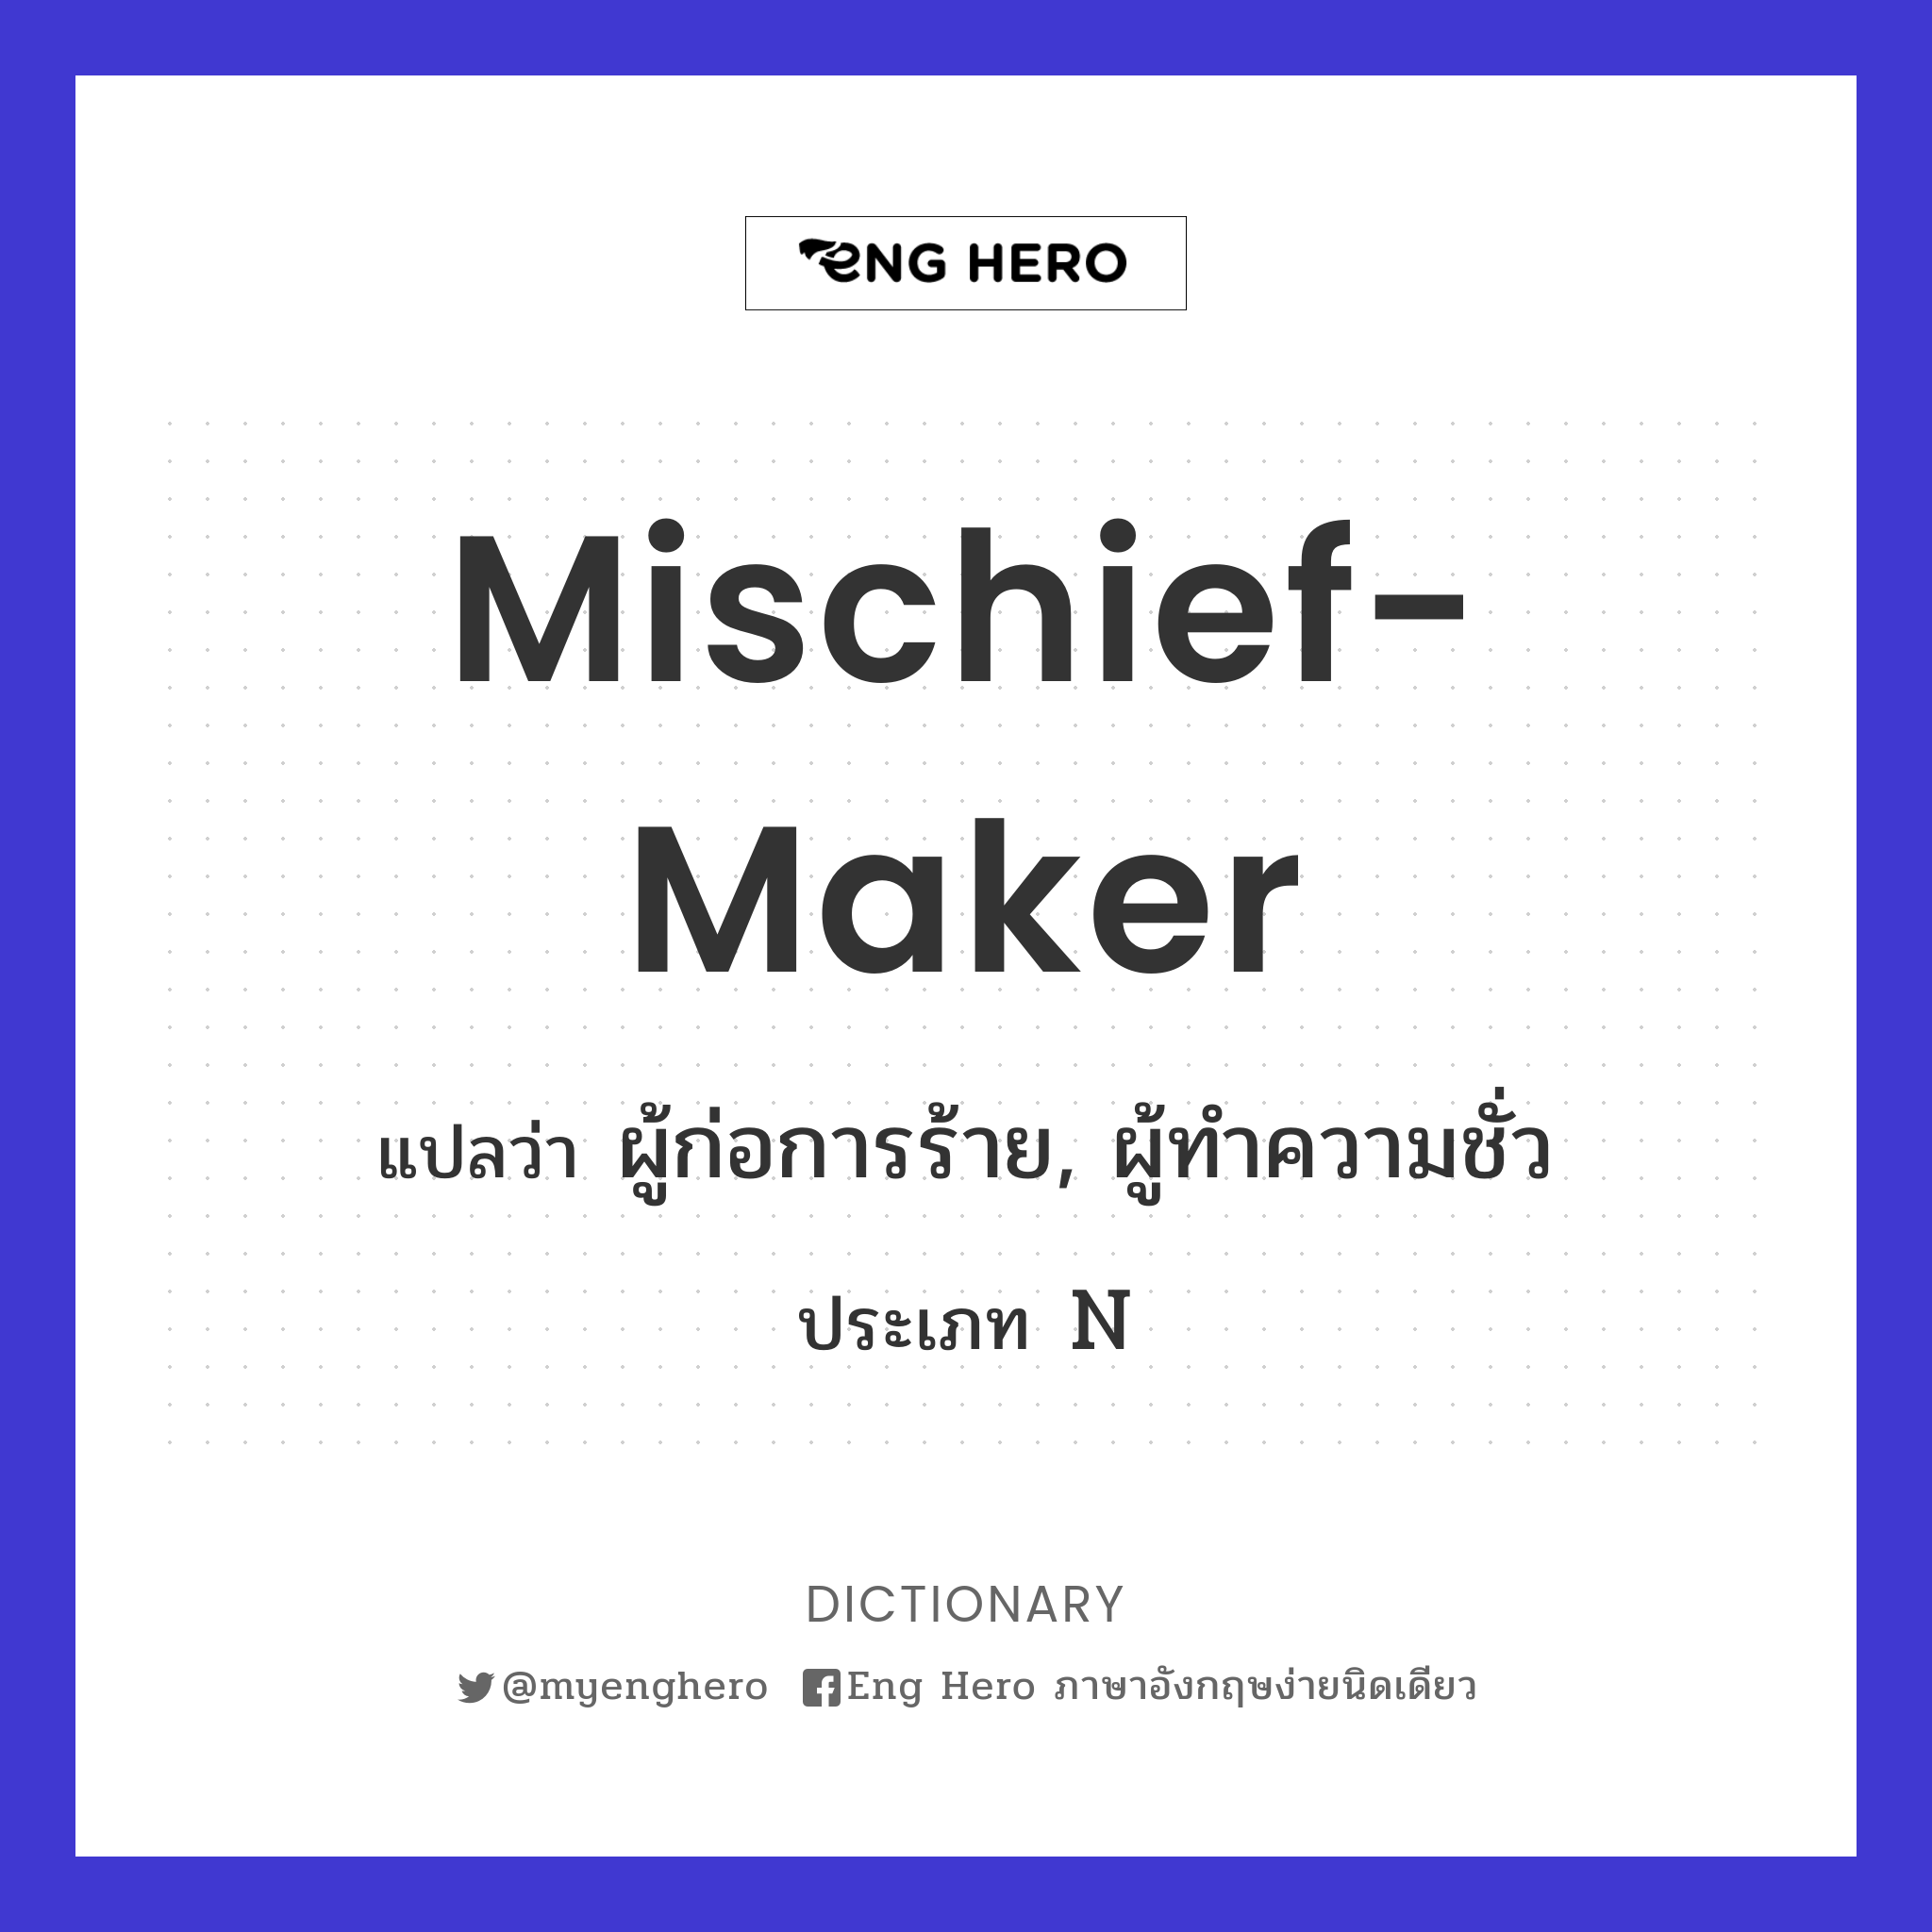 mischief-maker